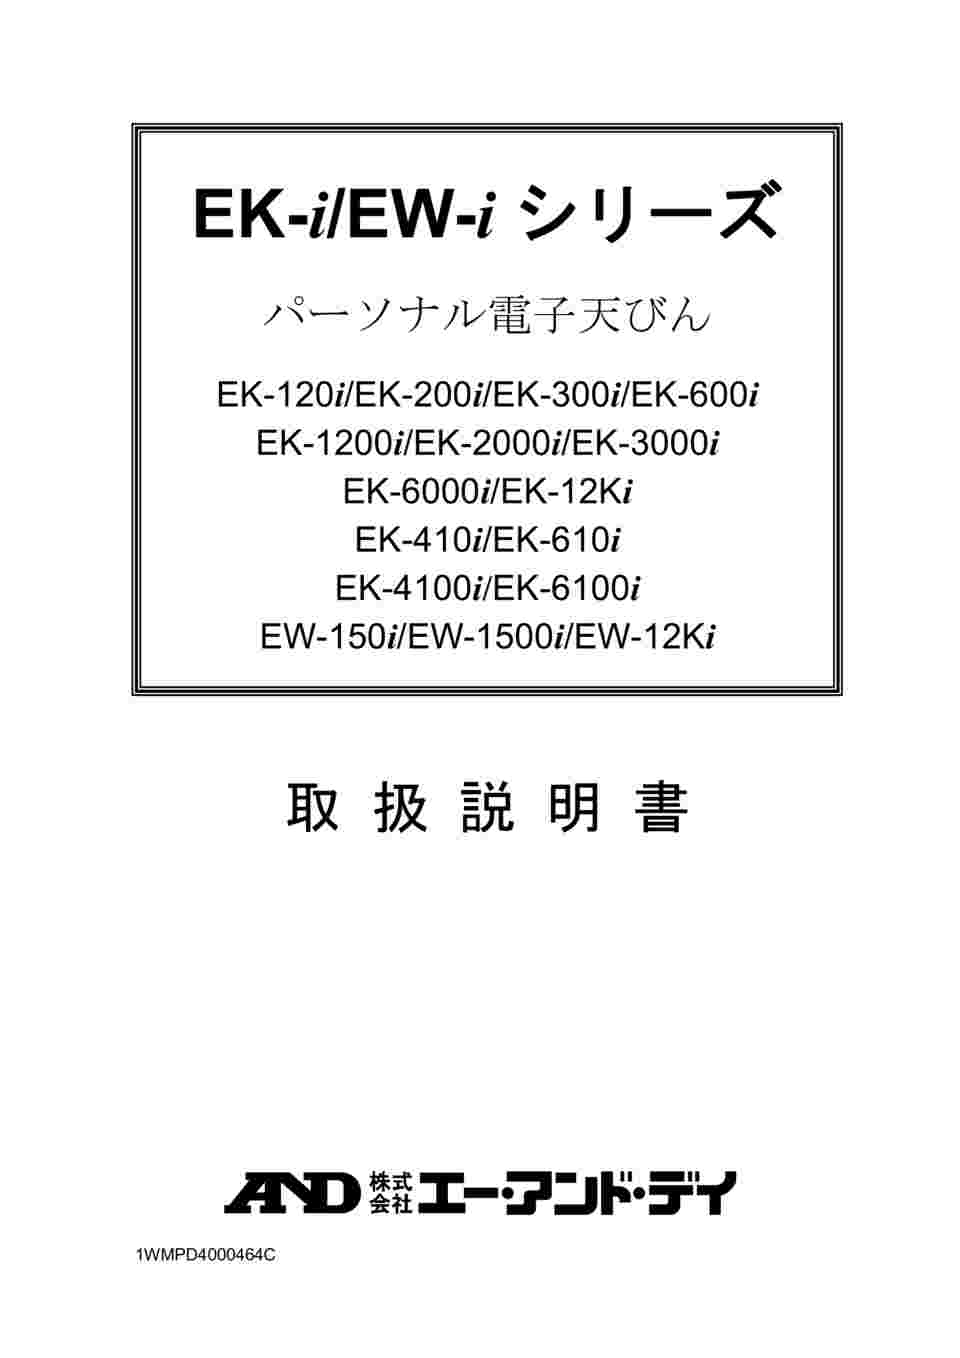 1-6842-03 コンパクト電子天びん トリプルレンジ EW-iシリーズ ひょう